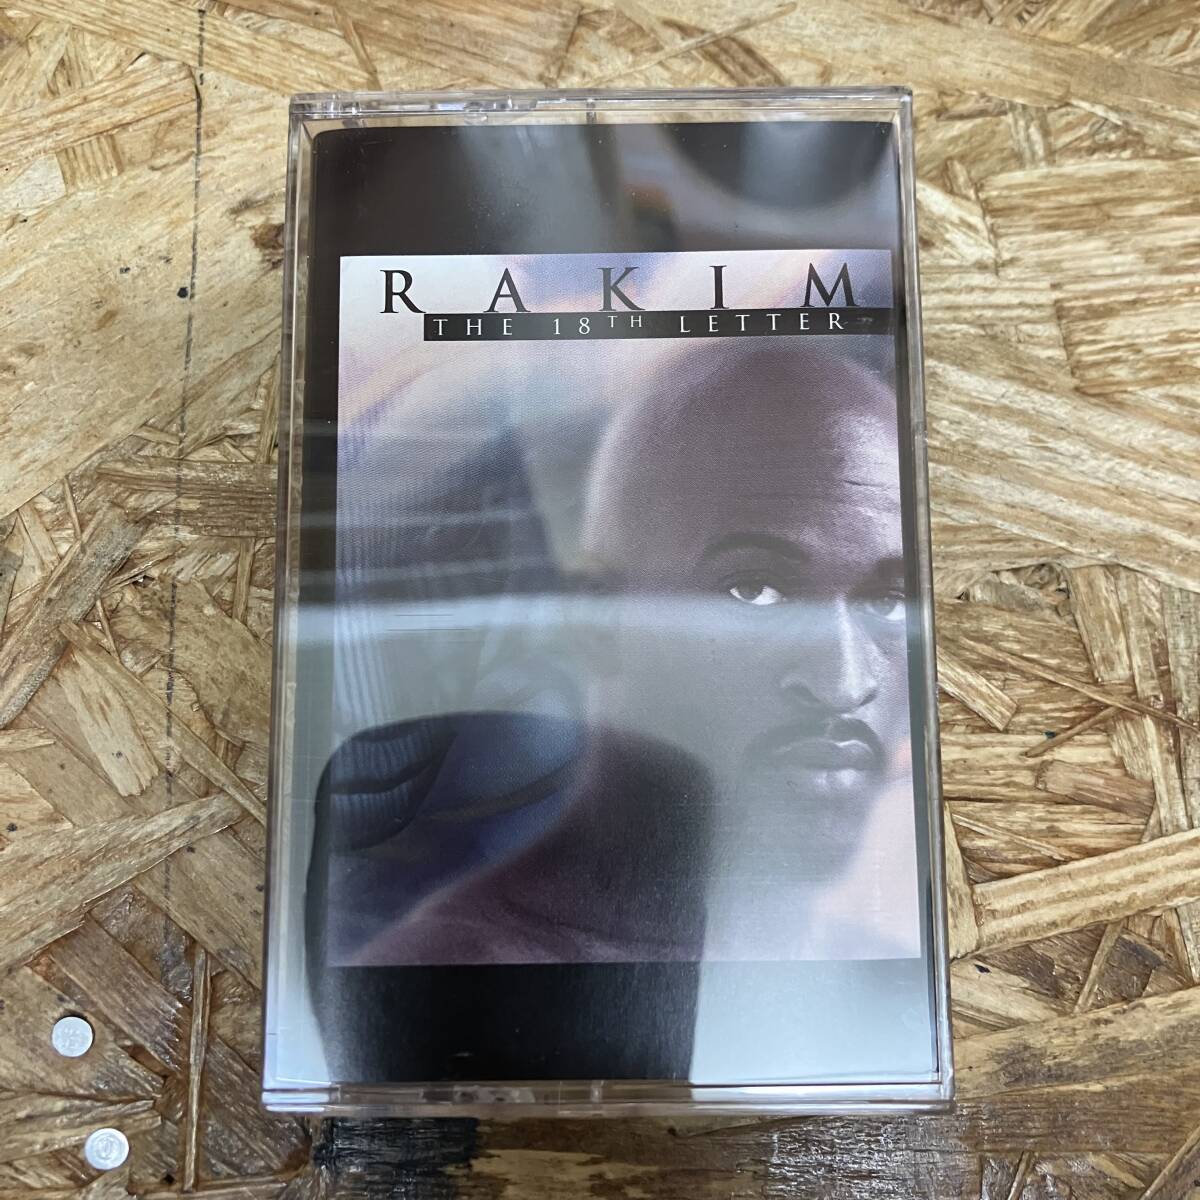 シ HIPHOP,R&B RAKIM - THE 18TH LETTER アルバム TAPE 中古品_画像1